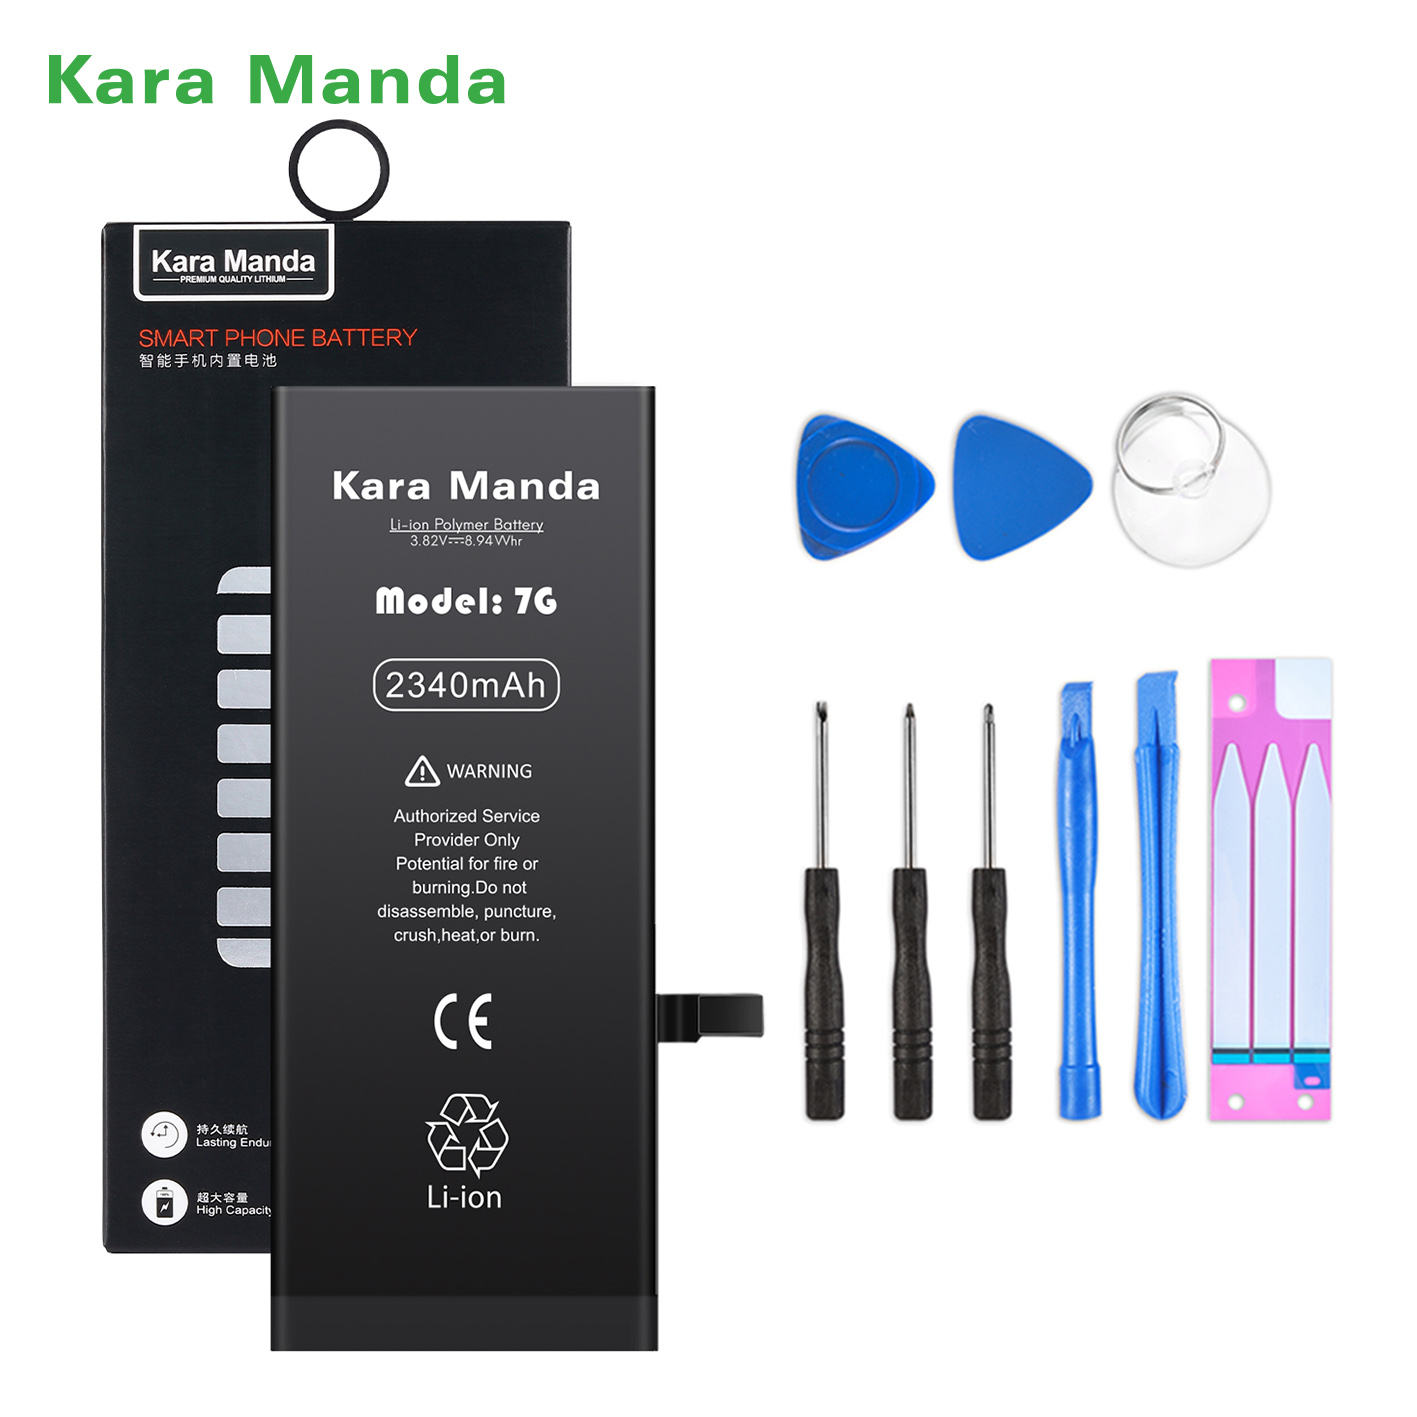 https://www.cnkaramanda.com/iphone-7-replacement-battery-high-capacity-2340mah-wholesale-oemkara-manda-product/